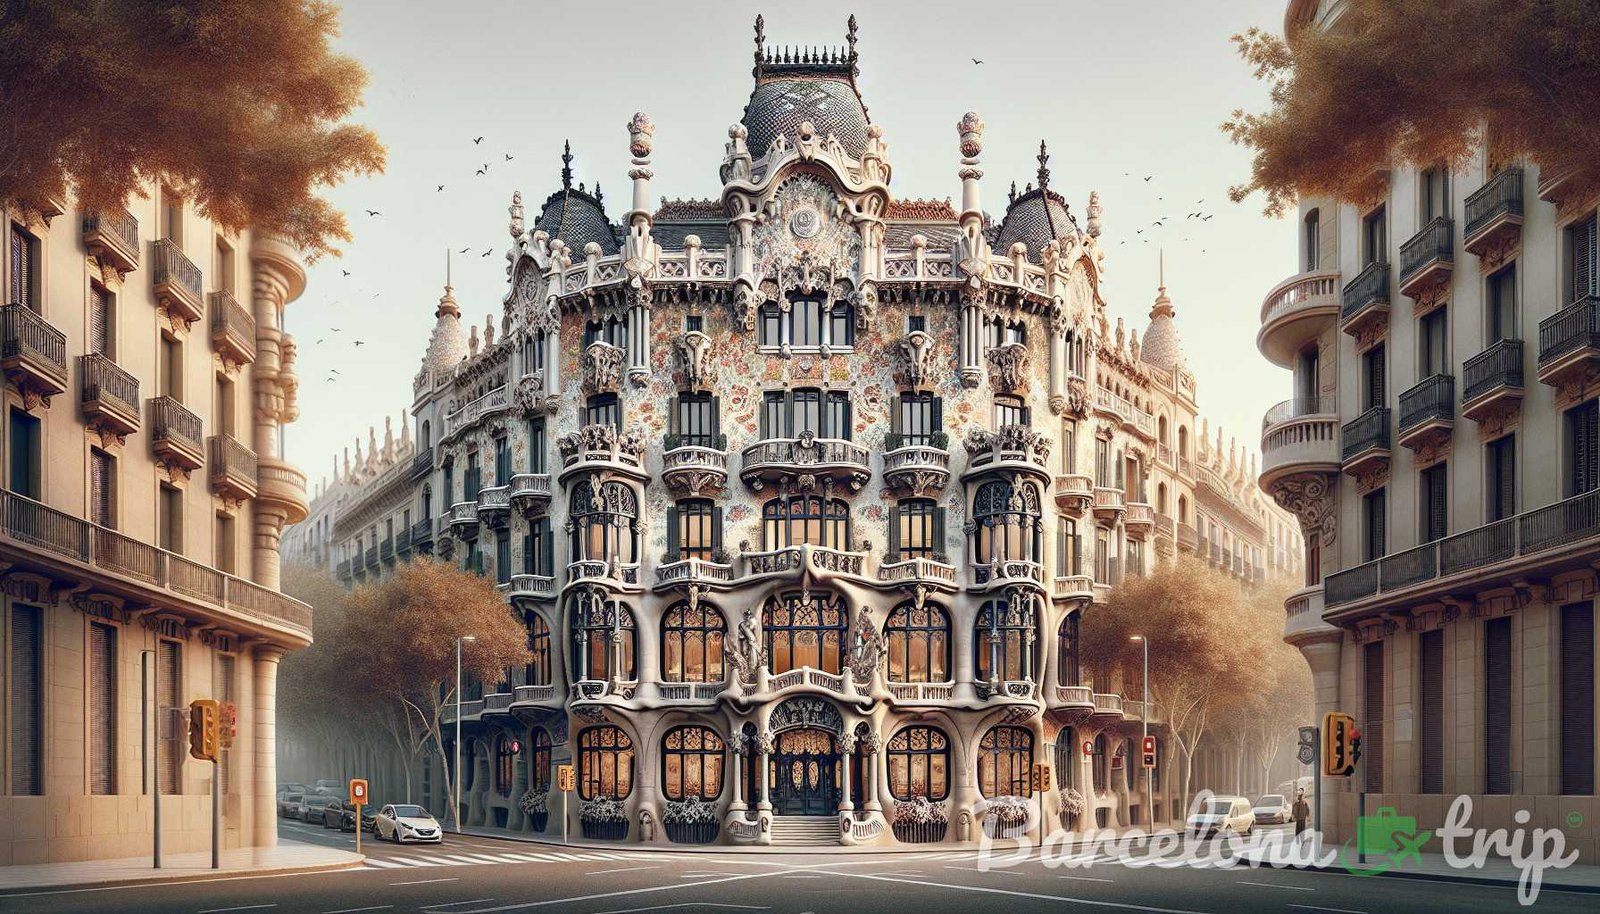 Illustrazione per la sezione: Un altro gioiello architettonico nello stesso isolato di Casa Batlló e Casa Amatller è Casa Lleó i Morera - gemme nascoste